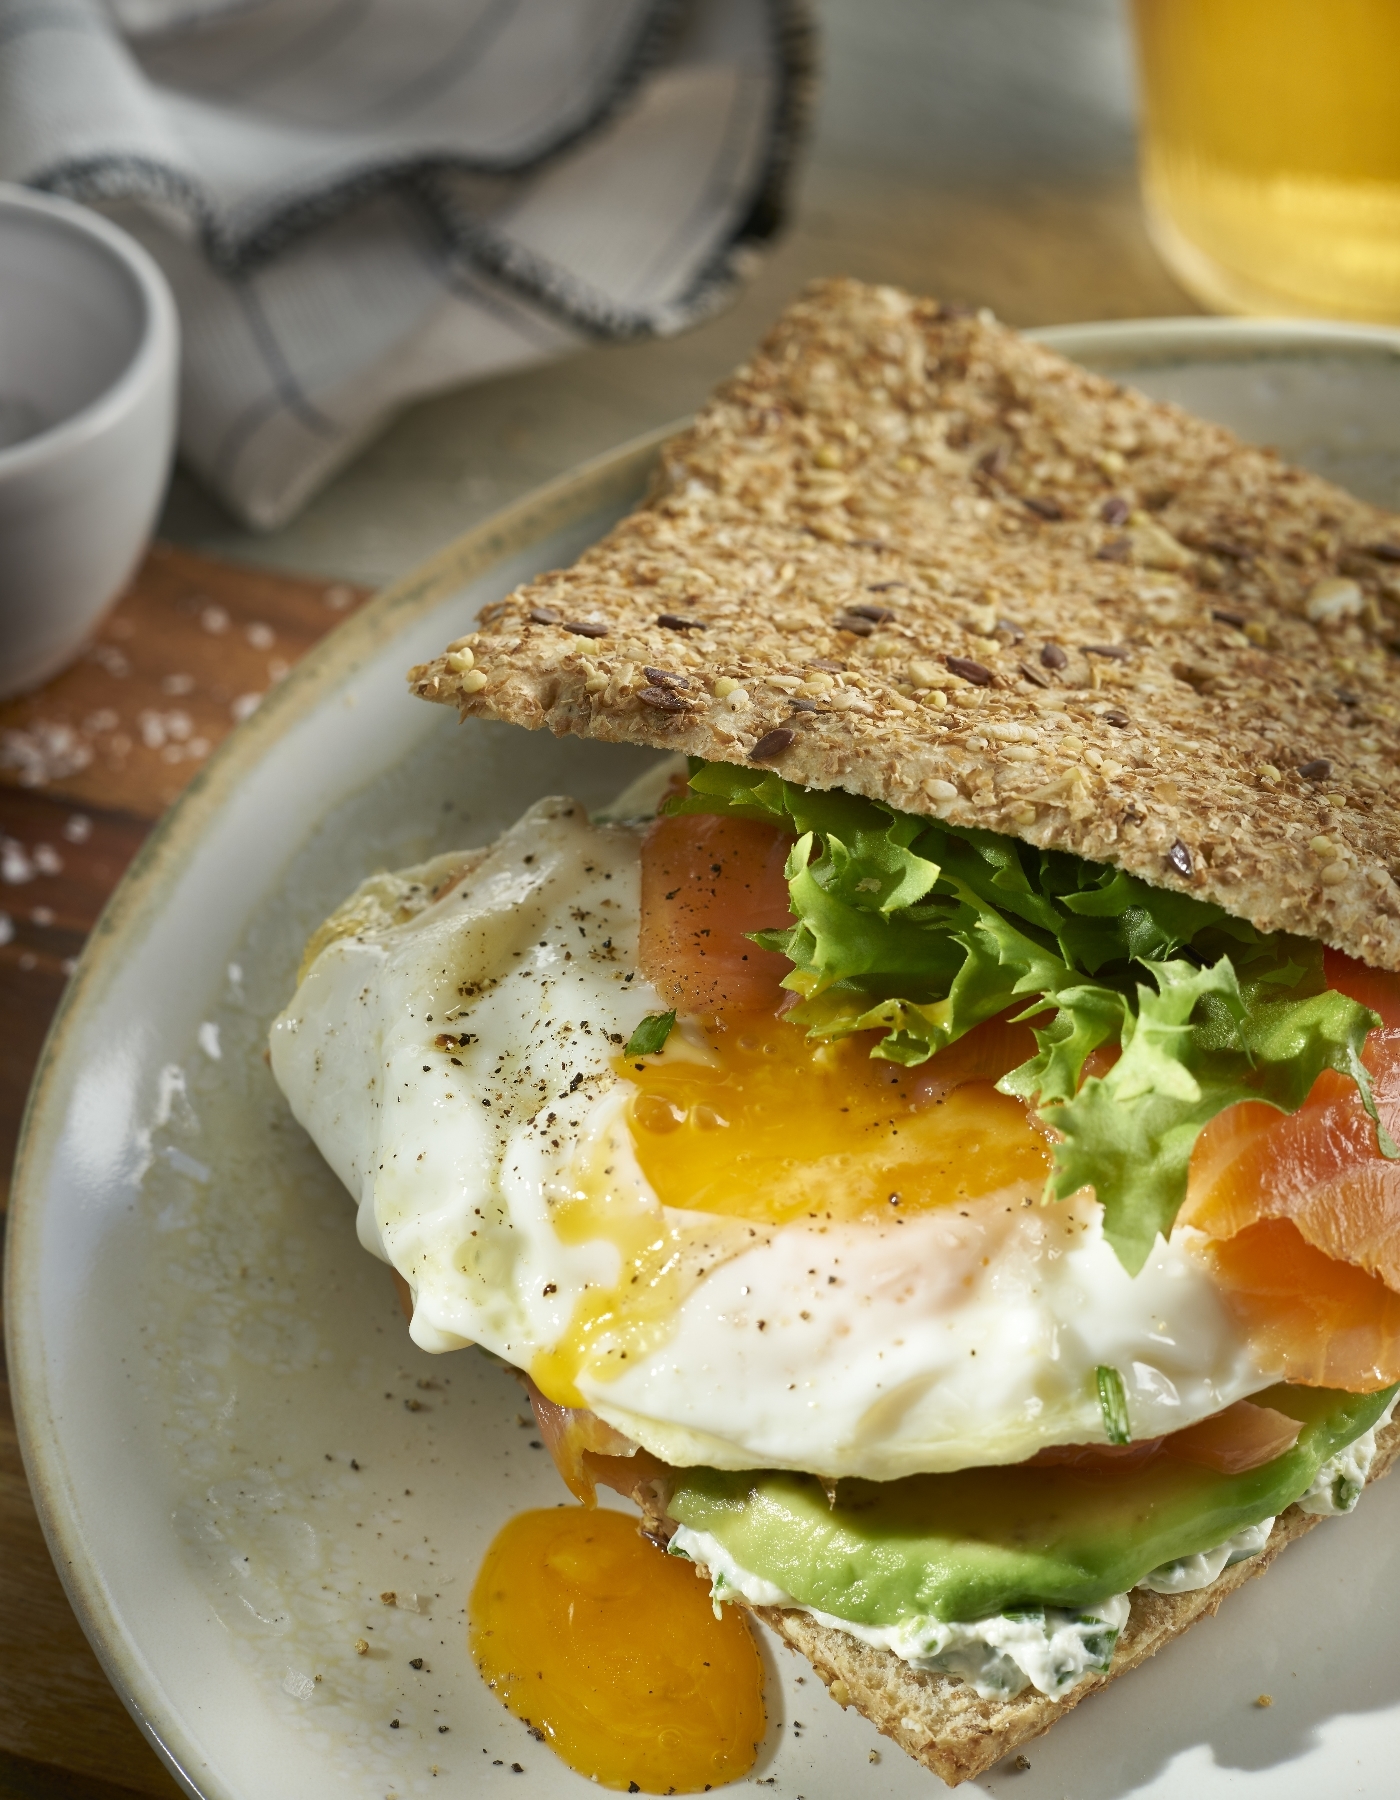 El huevo contiene solo 84 calorías y es el mejor aliado para adelgazar e incluir en las dietas para perder peso.